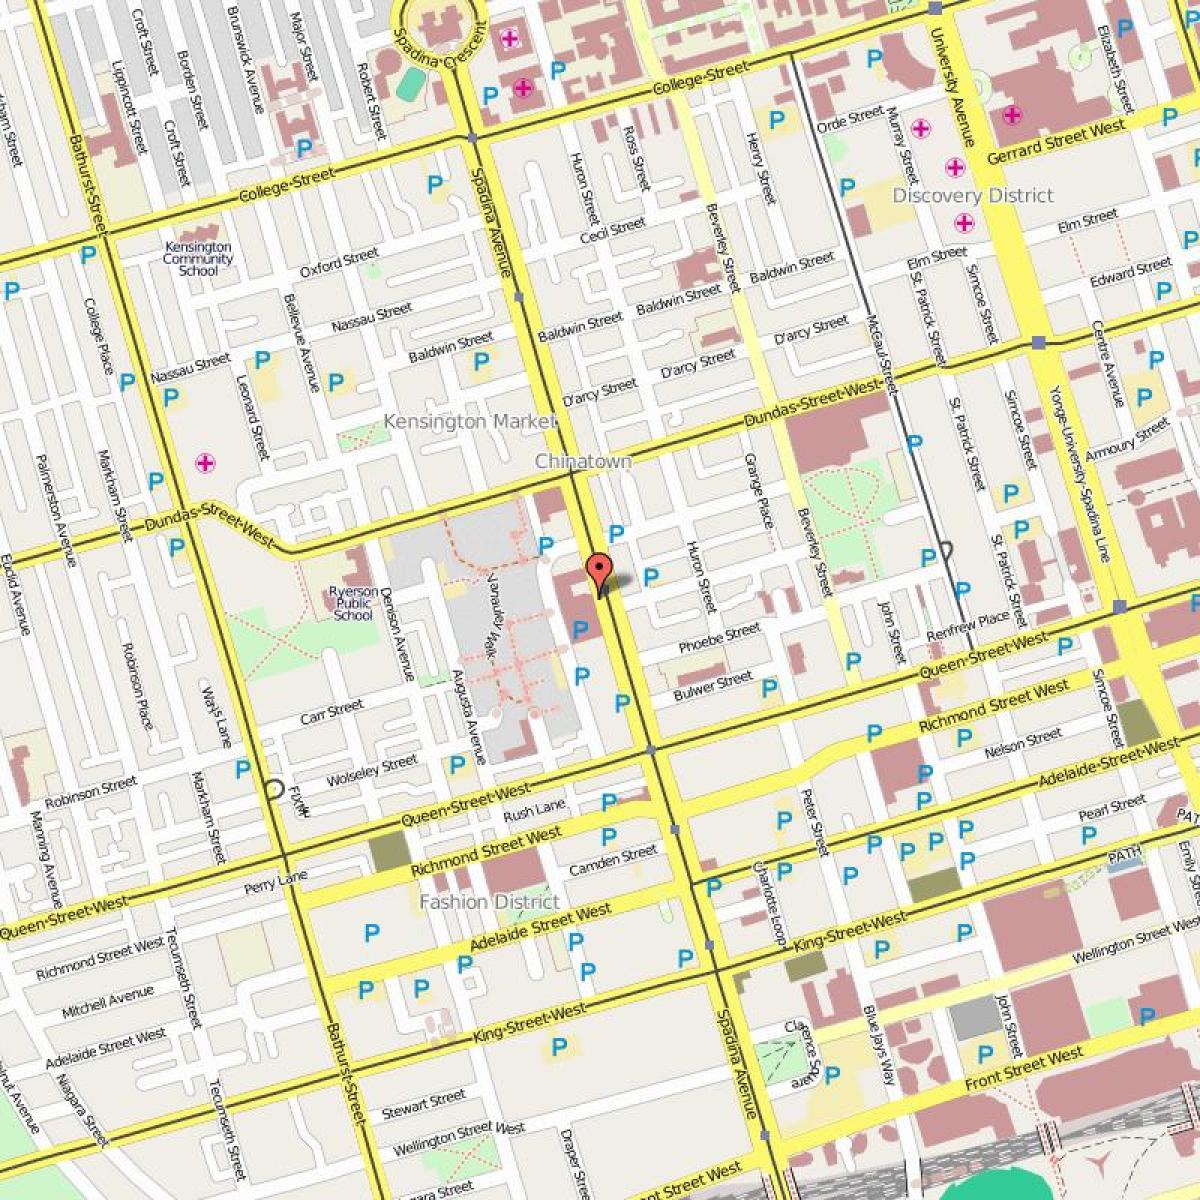 Harta e Chinatown Toronto